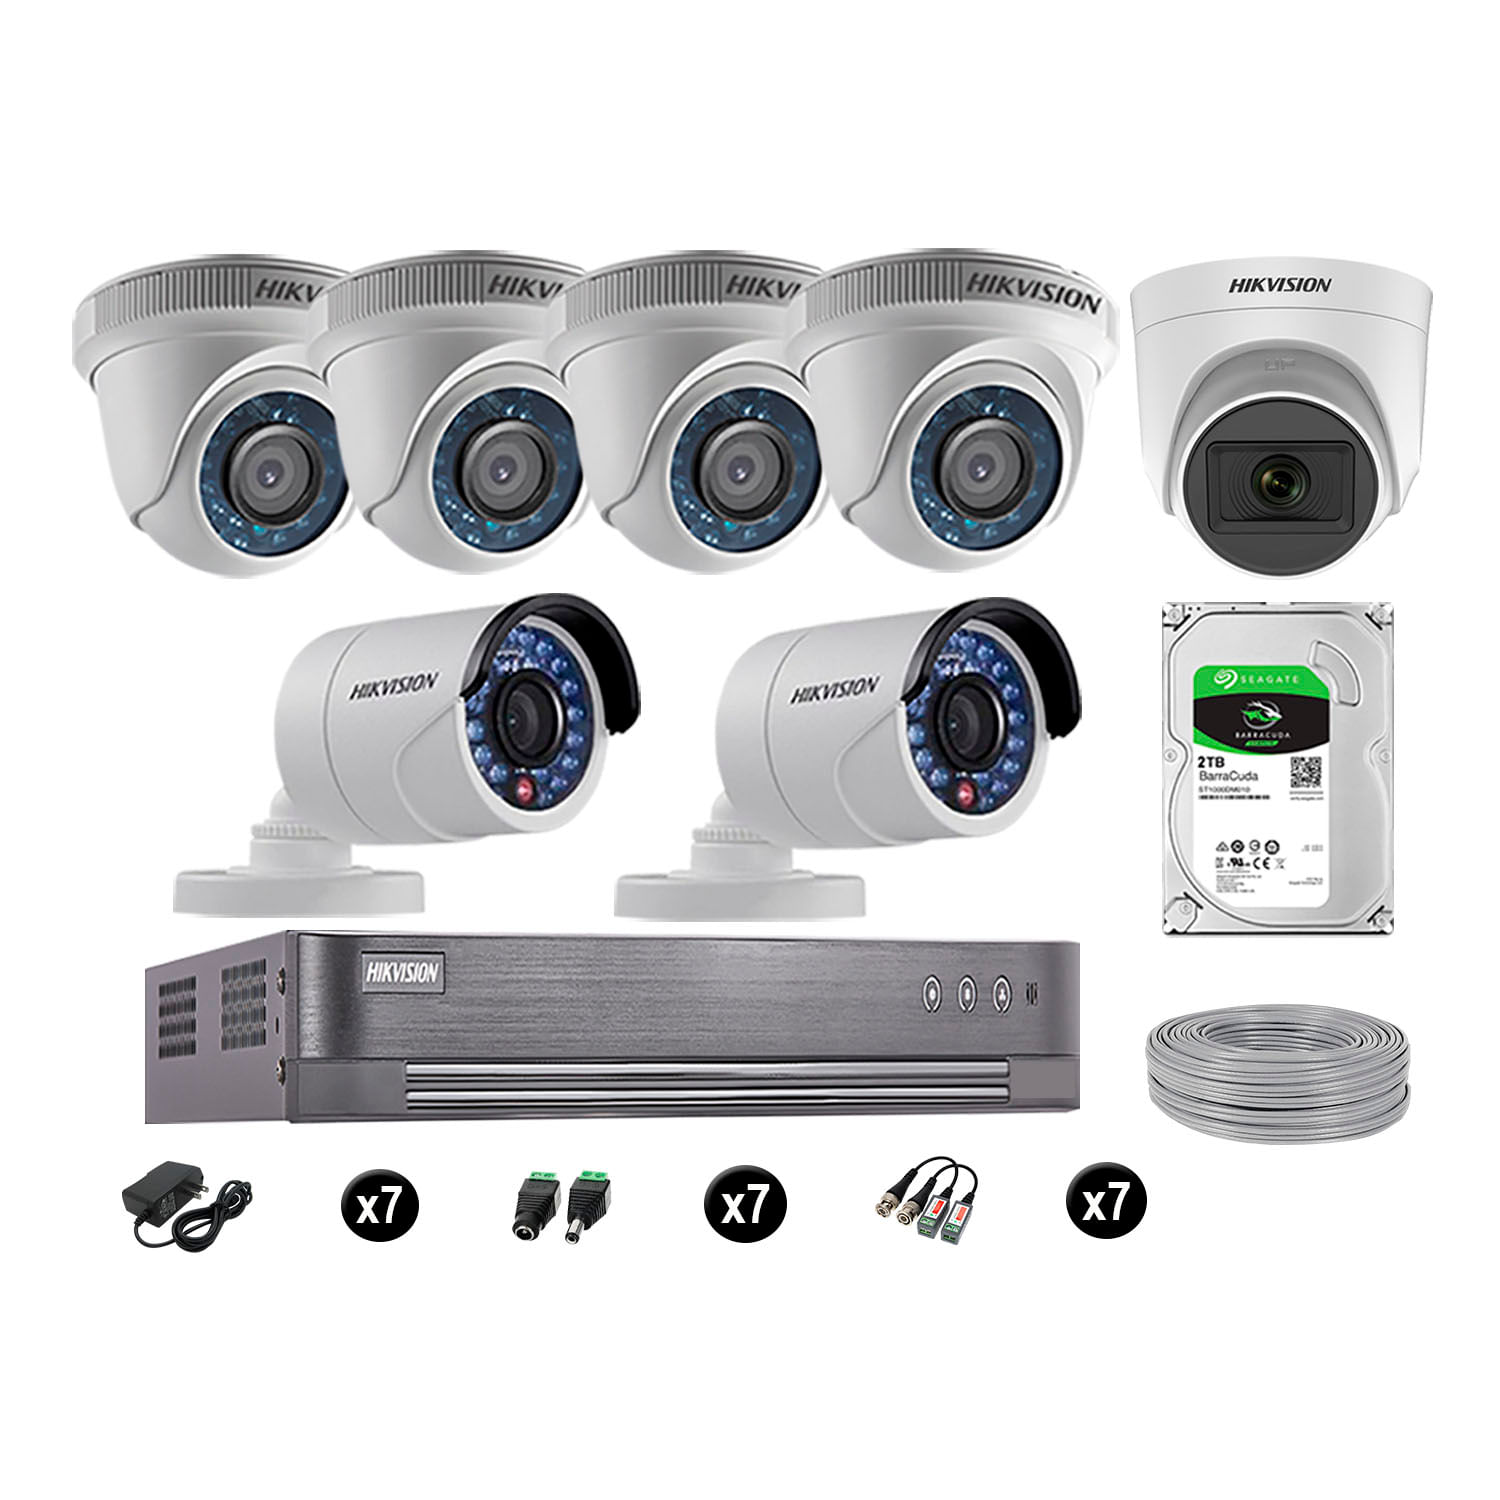 Cámaras de Seguridad Hikvision Kit 7 Vigilancia Hd 720P 2Tb 1 Cámara con Audio Completo